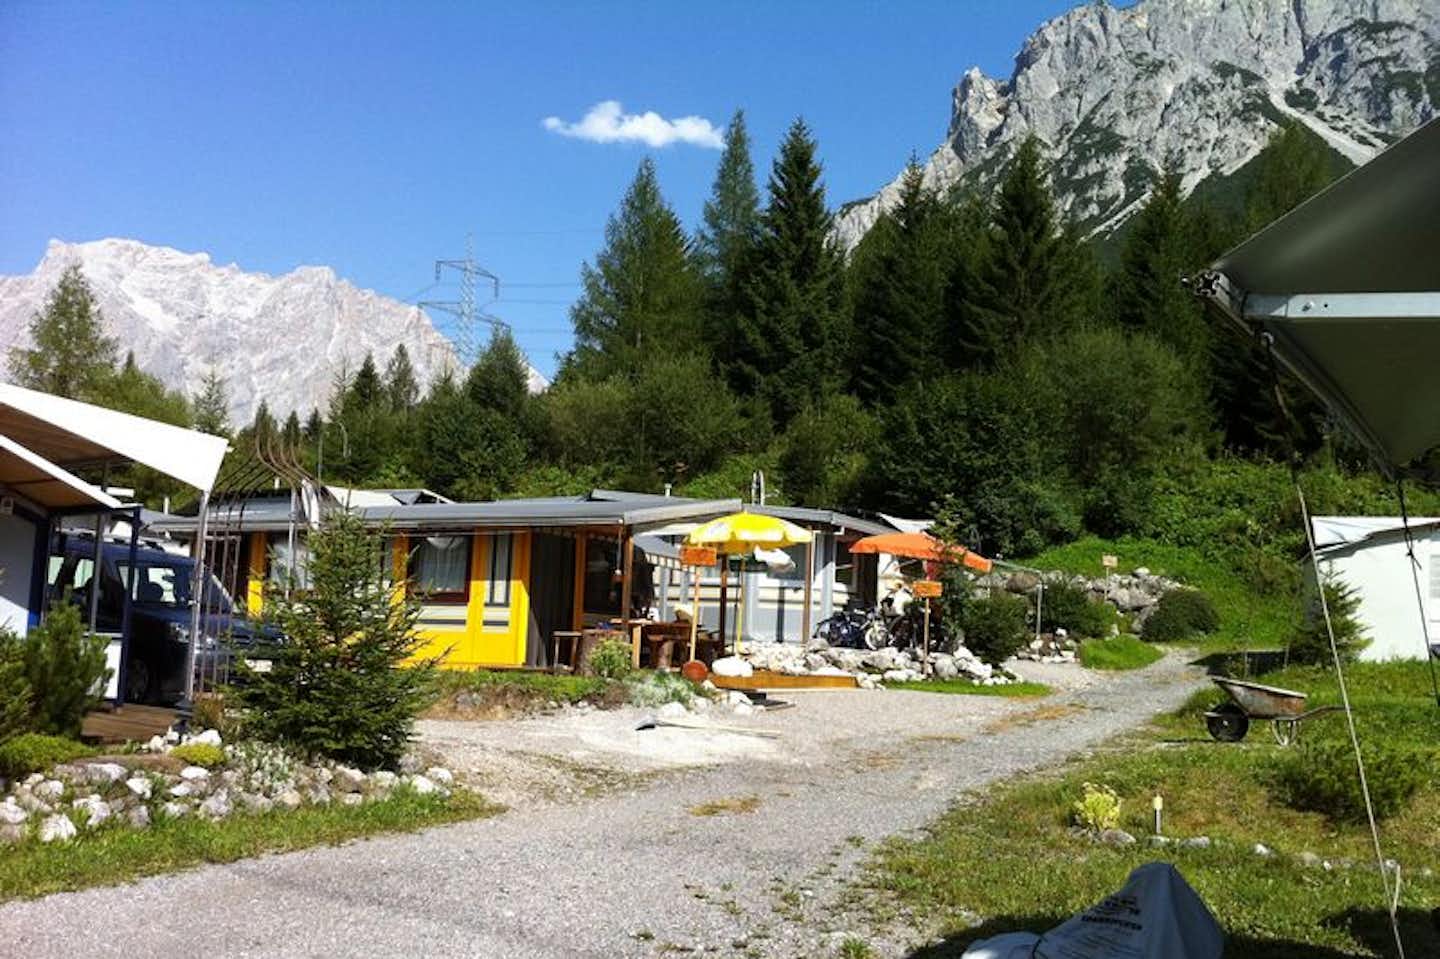 Alpencamp Marienberg - Mobilheime auf den Campingplatz mit den Alpen im Hintergrund